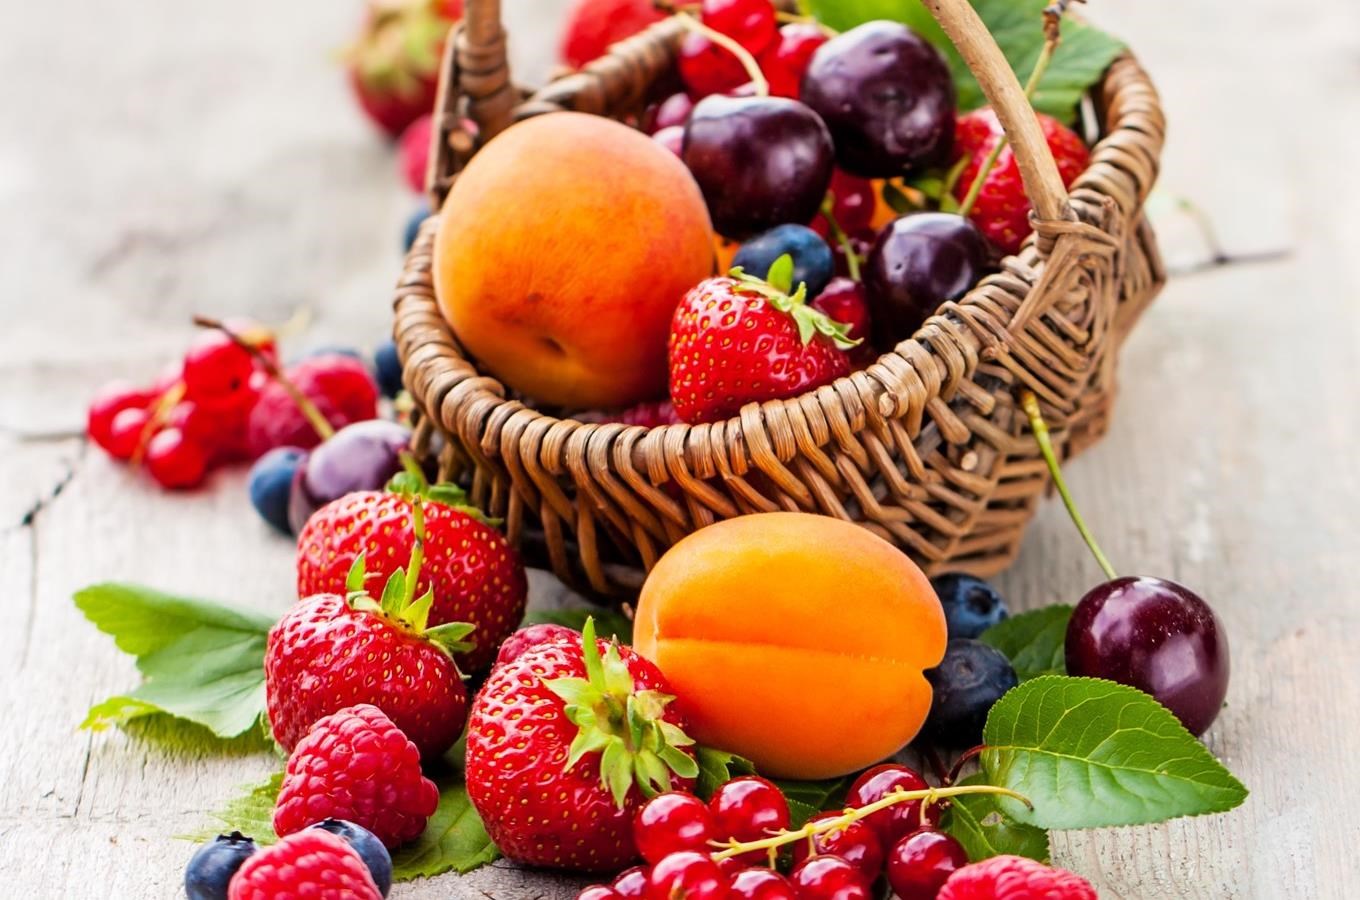 Ovocný mix: tipy, kde ochutnat jahody, borůvky, maliny, meruňky a další plody léta